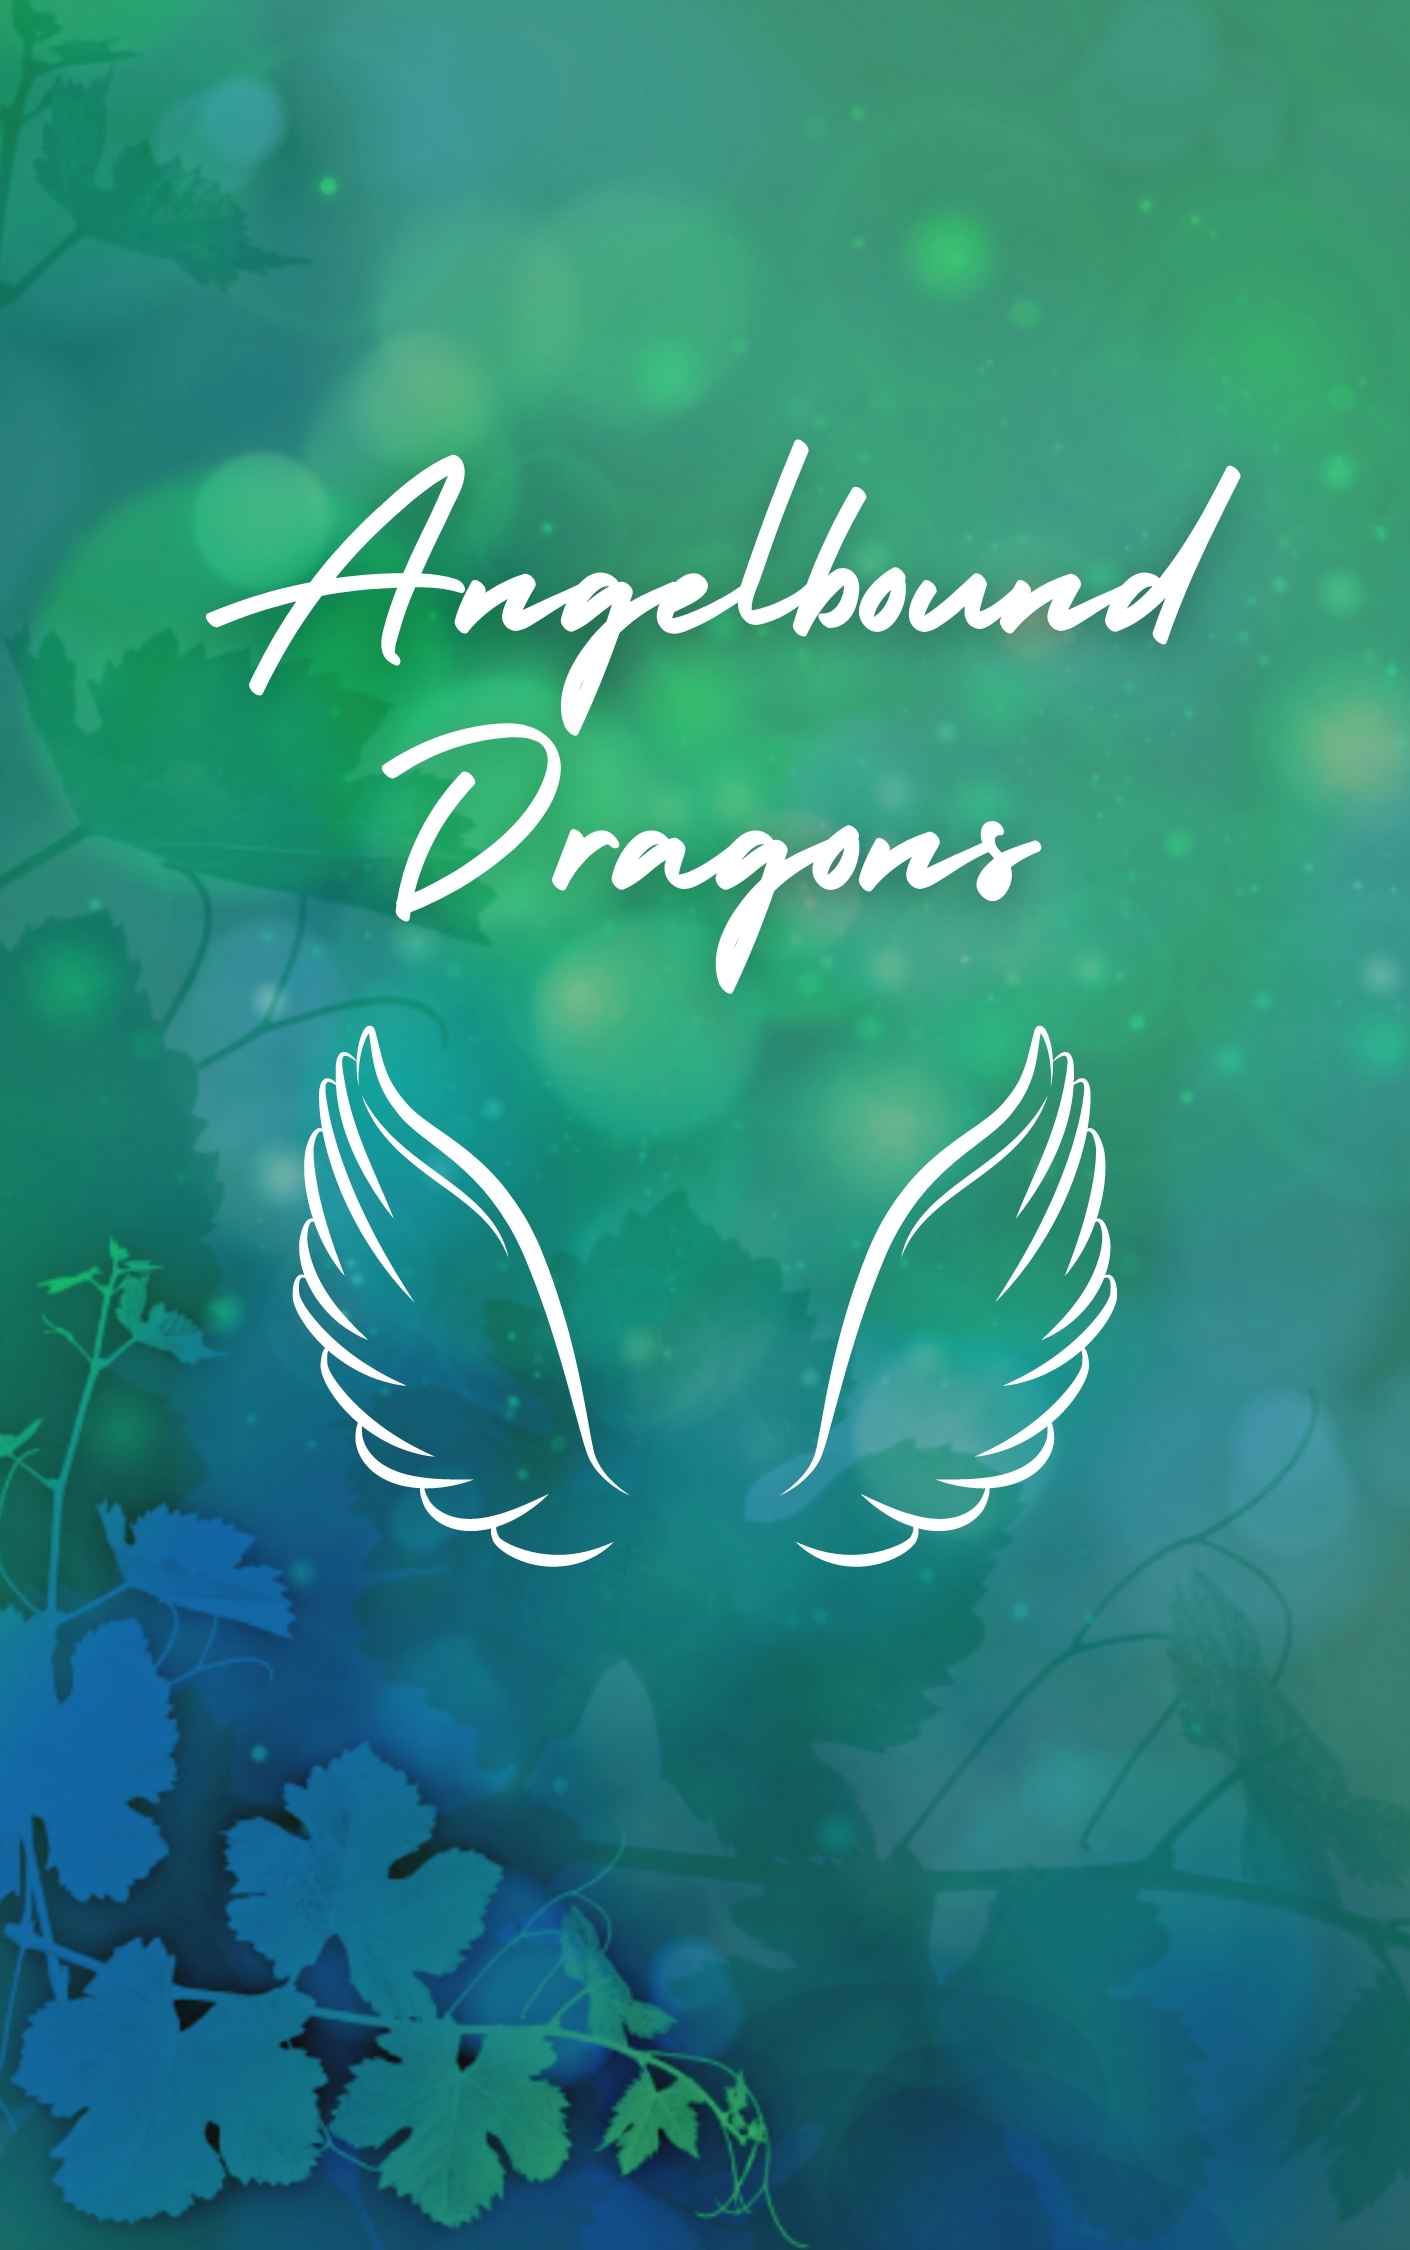 Angelbound Dragons